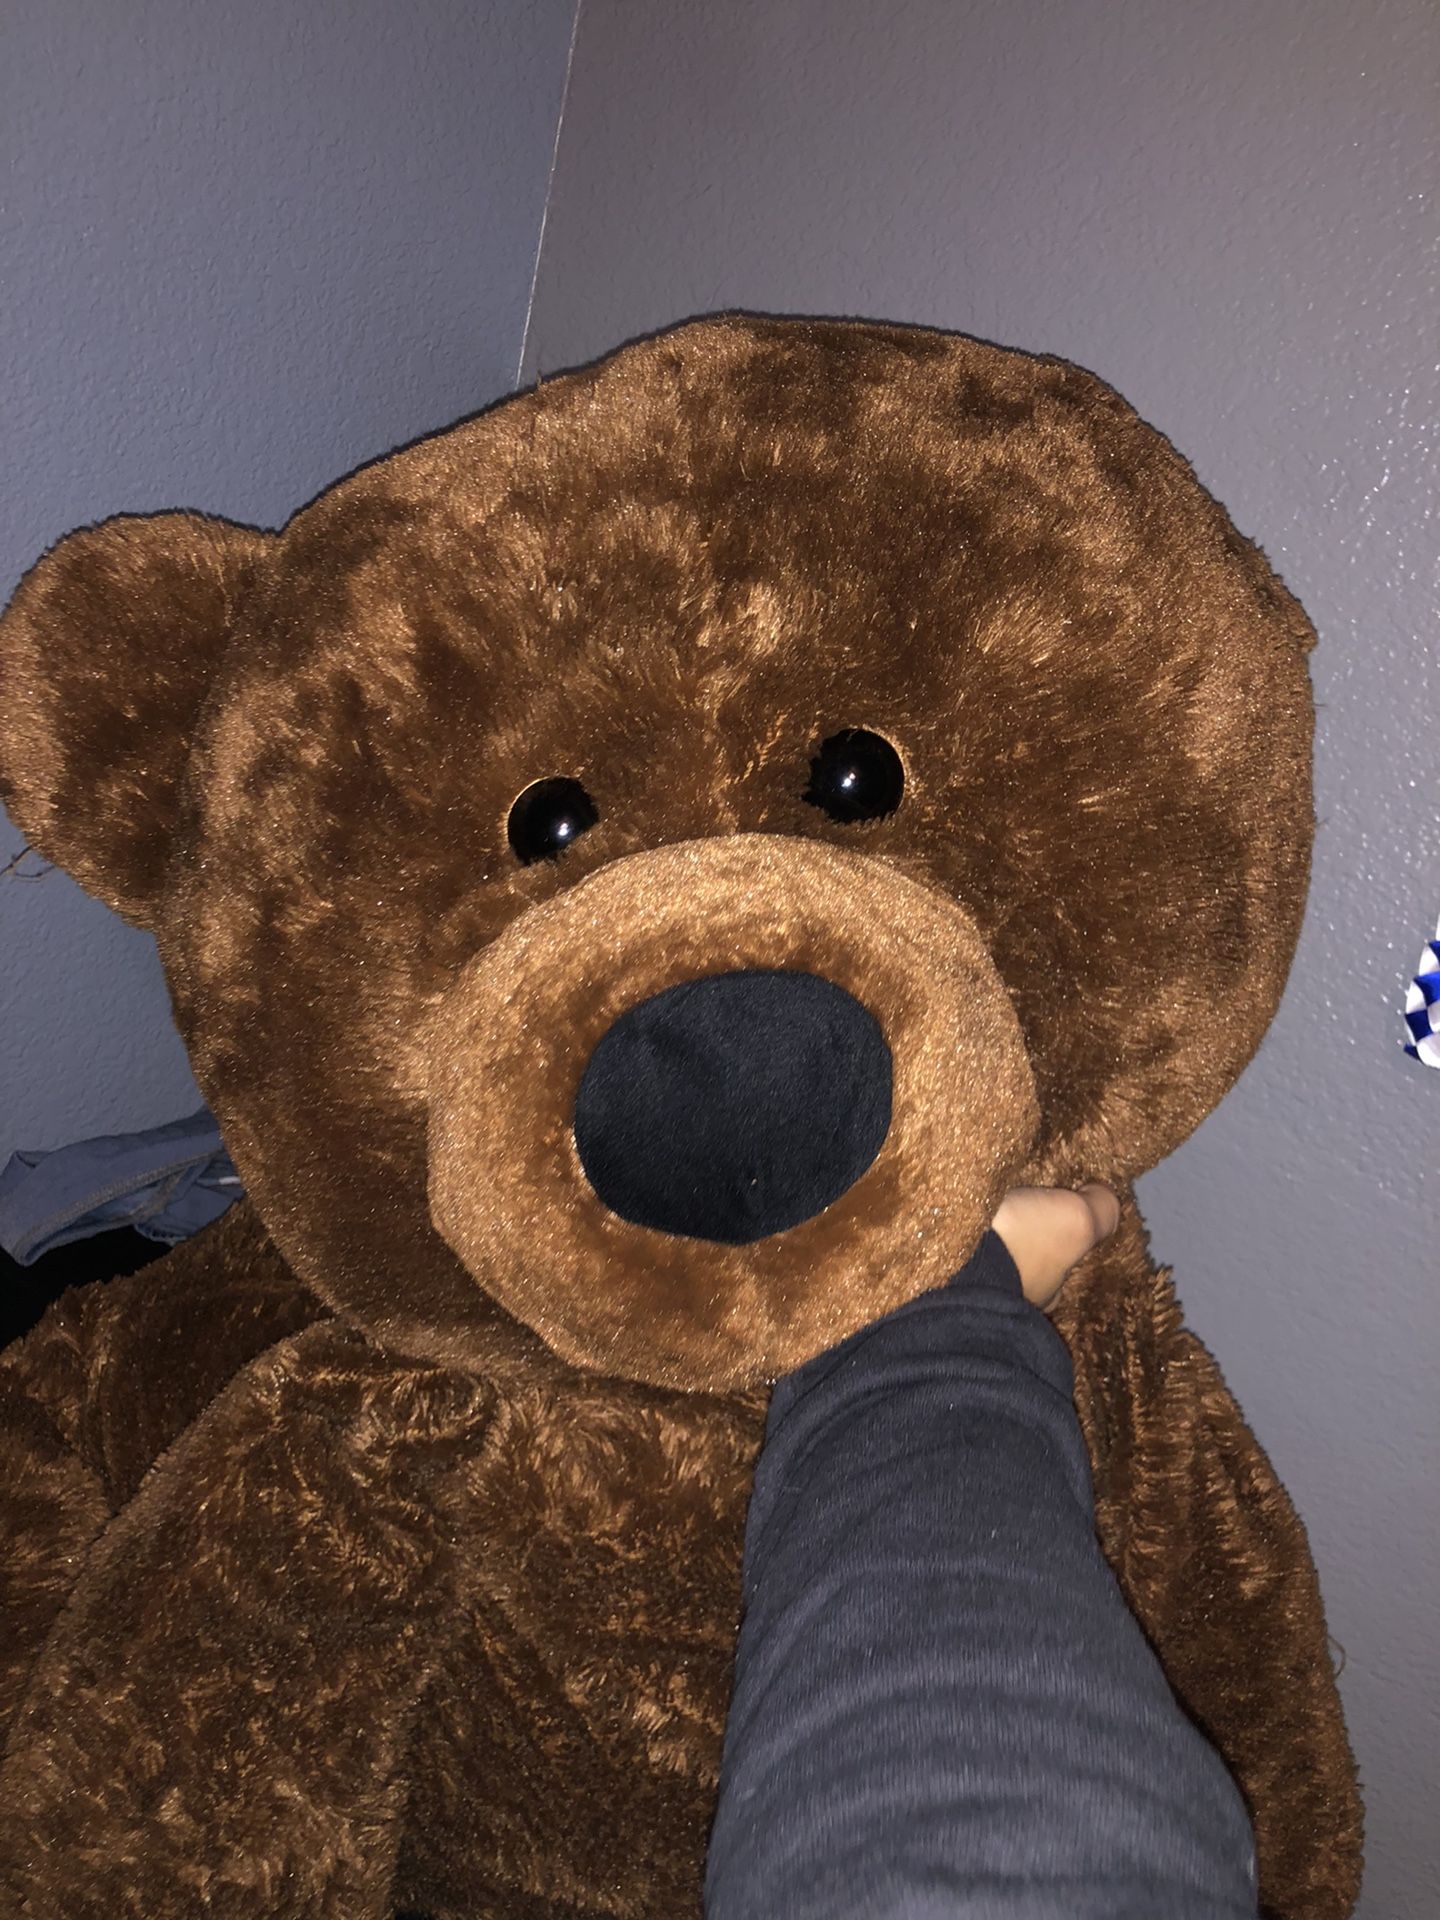 Giant Teddy bear